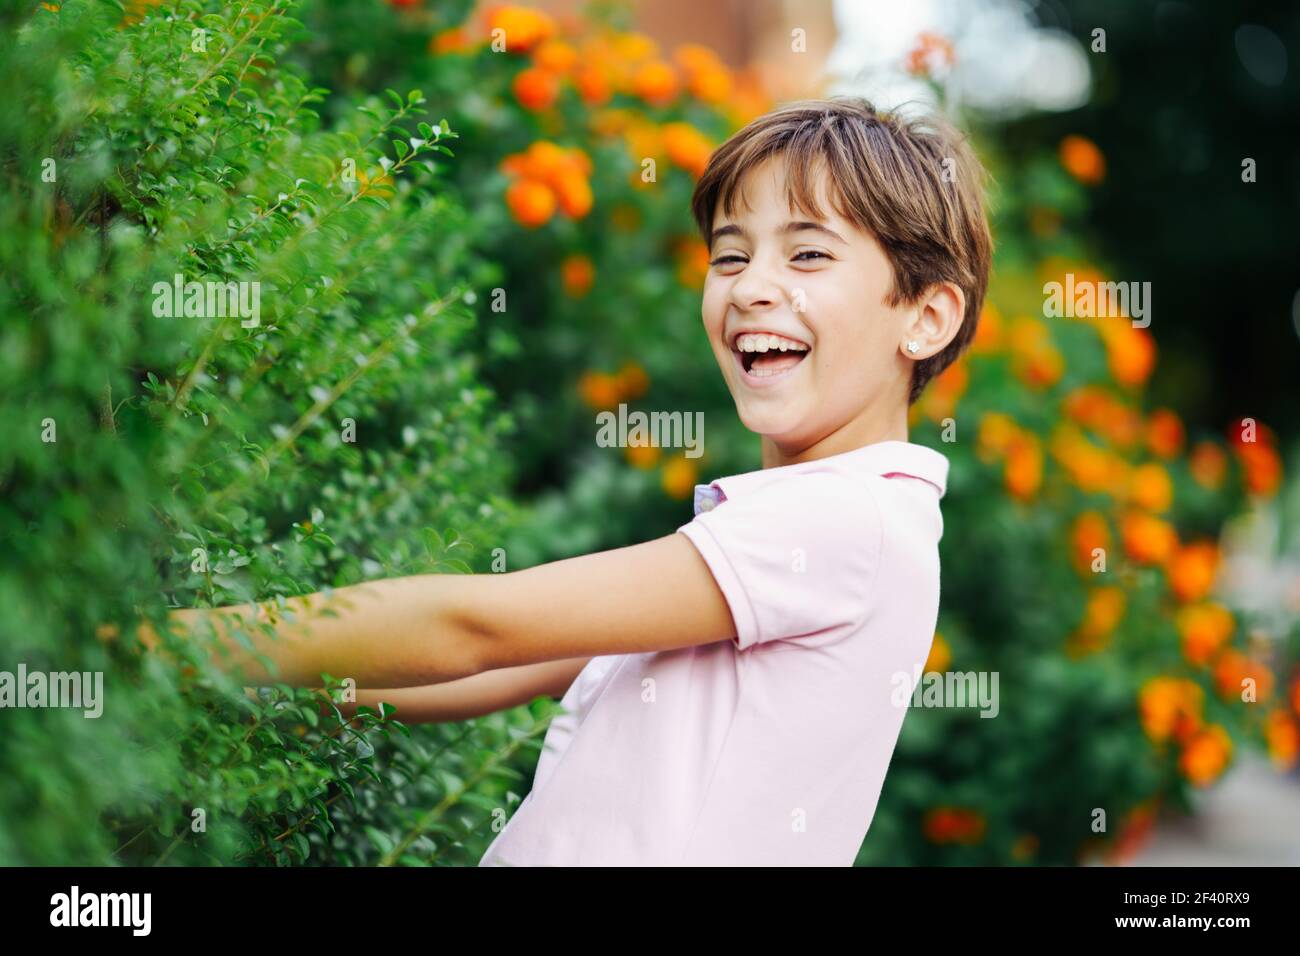 Bambina con capelli molto corti, ridendo in un parco urbano con vestito rosa. Bambina, otto anni, che si diverte in un parco urbano. Foto Stock